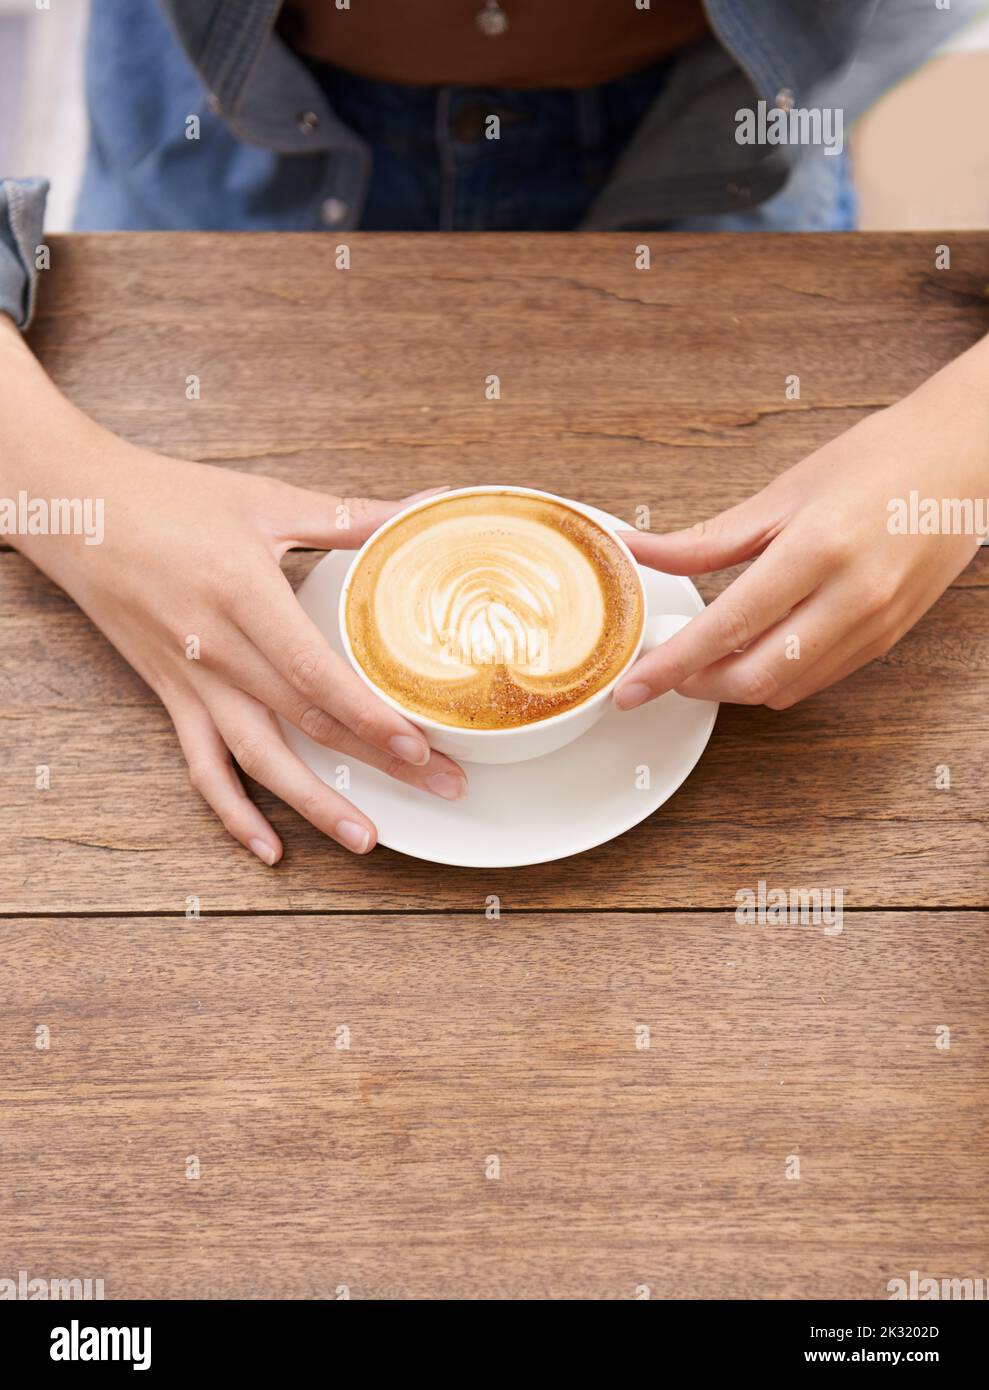 Détendez-vous avec une tasse de café frais. Une jeune femme boit du café dans un café. Banque D'Images